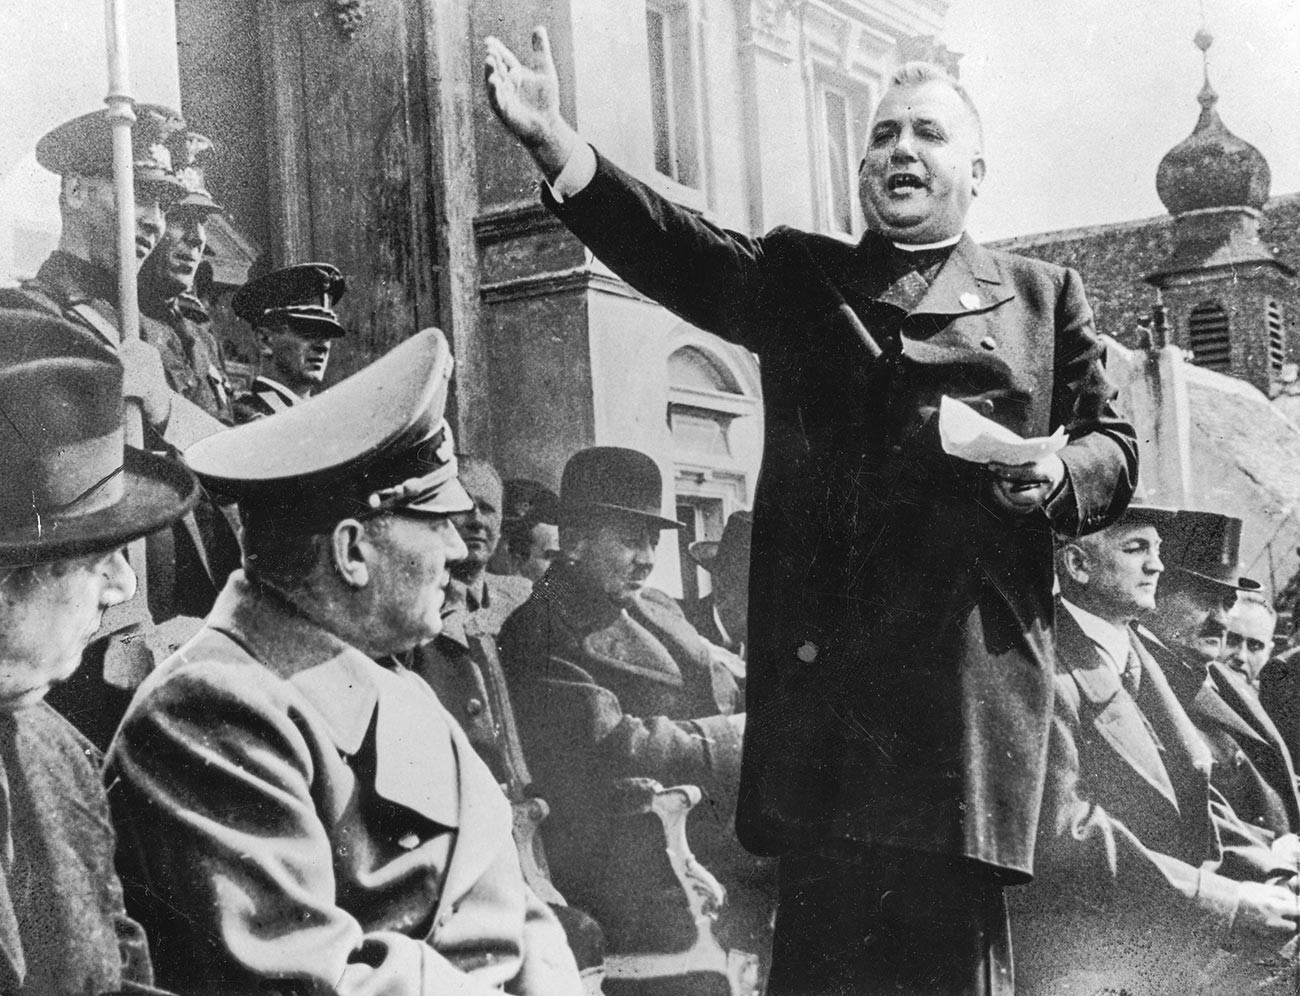 Slovački svećenik i političar Jozef Tiso (1887.-1947.) pozdravlja naciste u neovisnoj Slovačkoj, 1939. 
